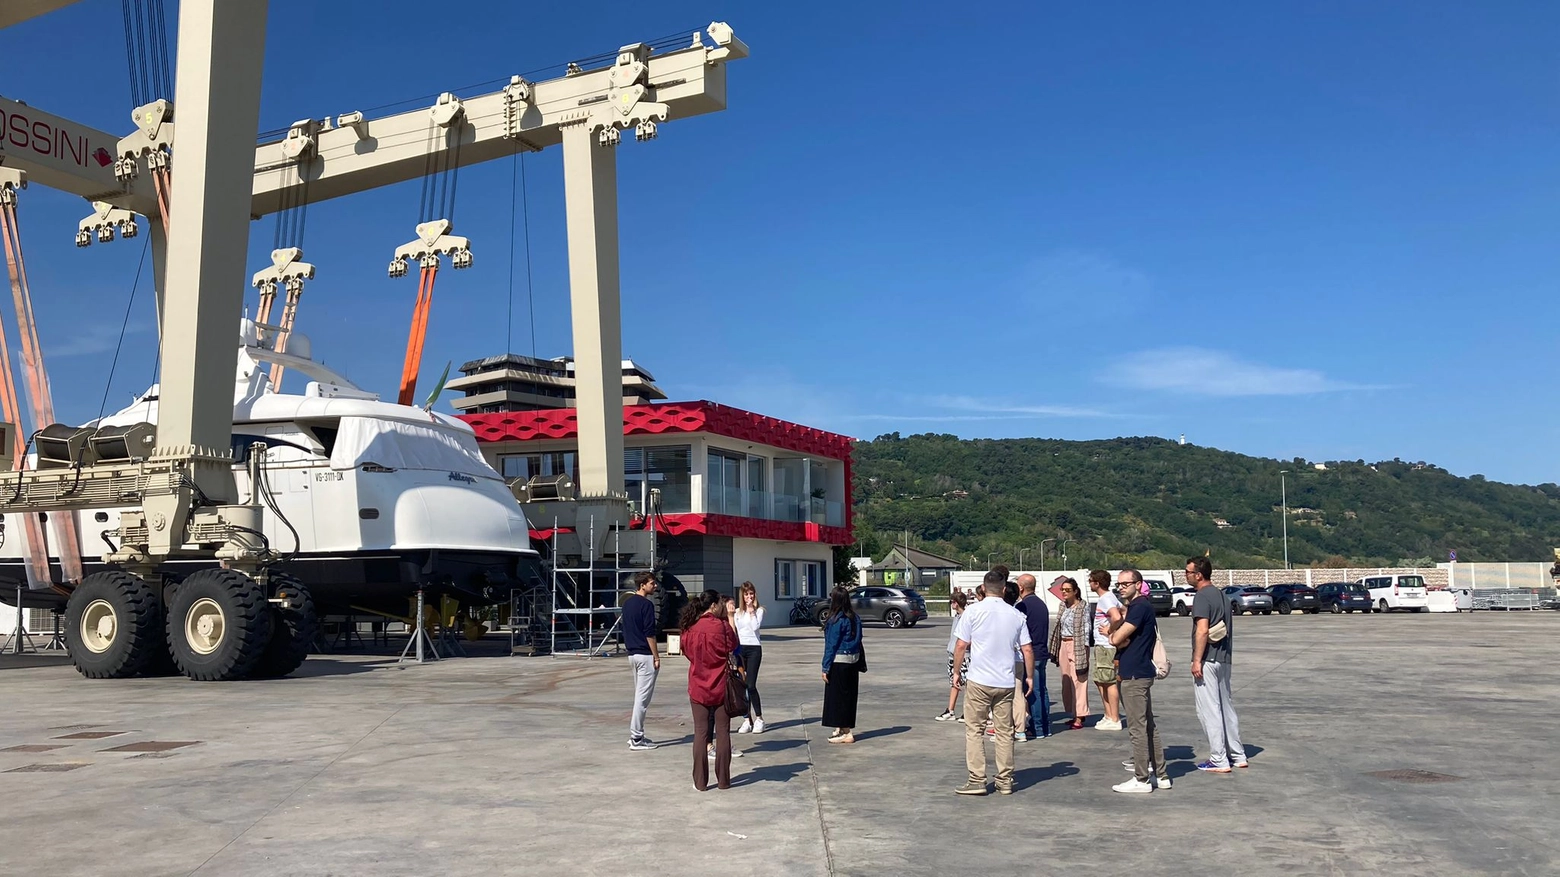 Visitatori al cantiere navale Rossini al porto di Pesaro